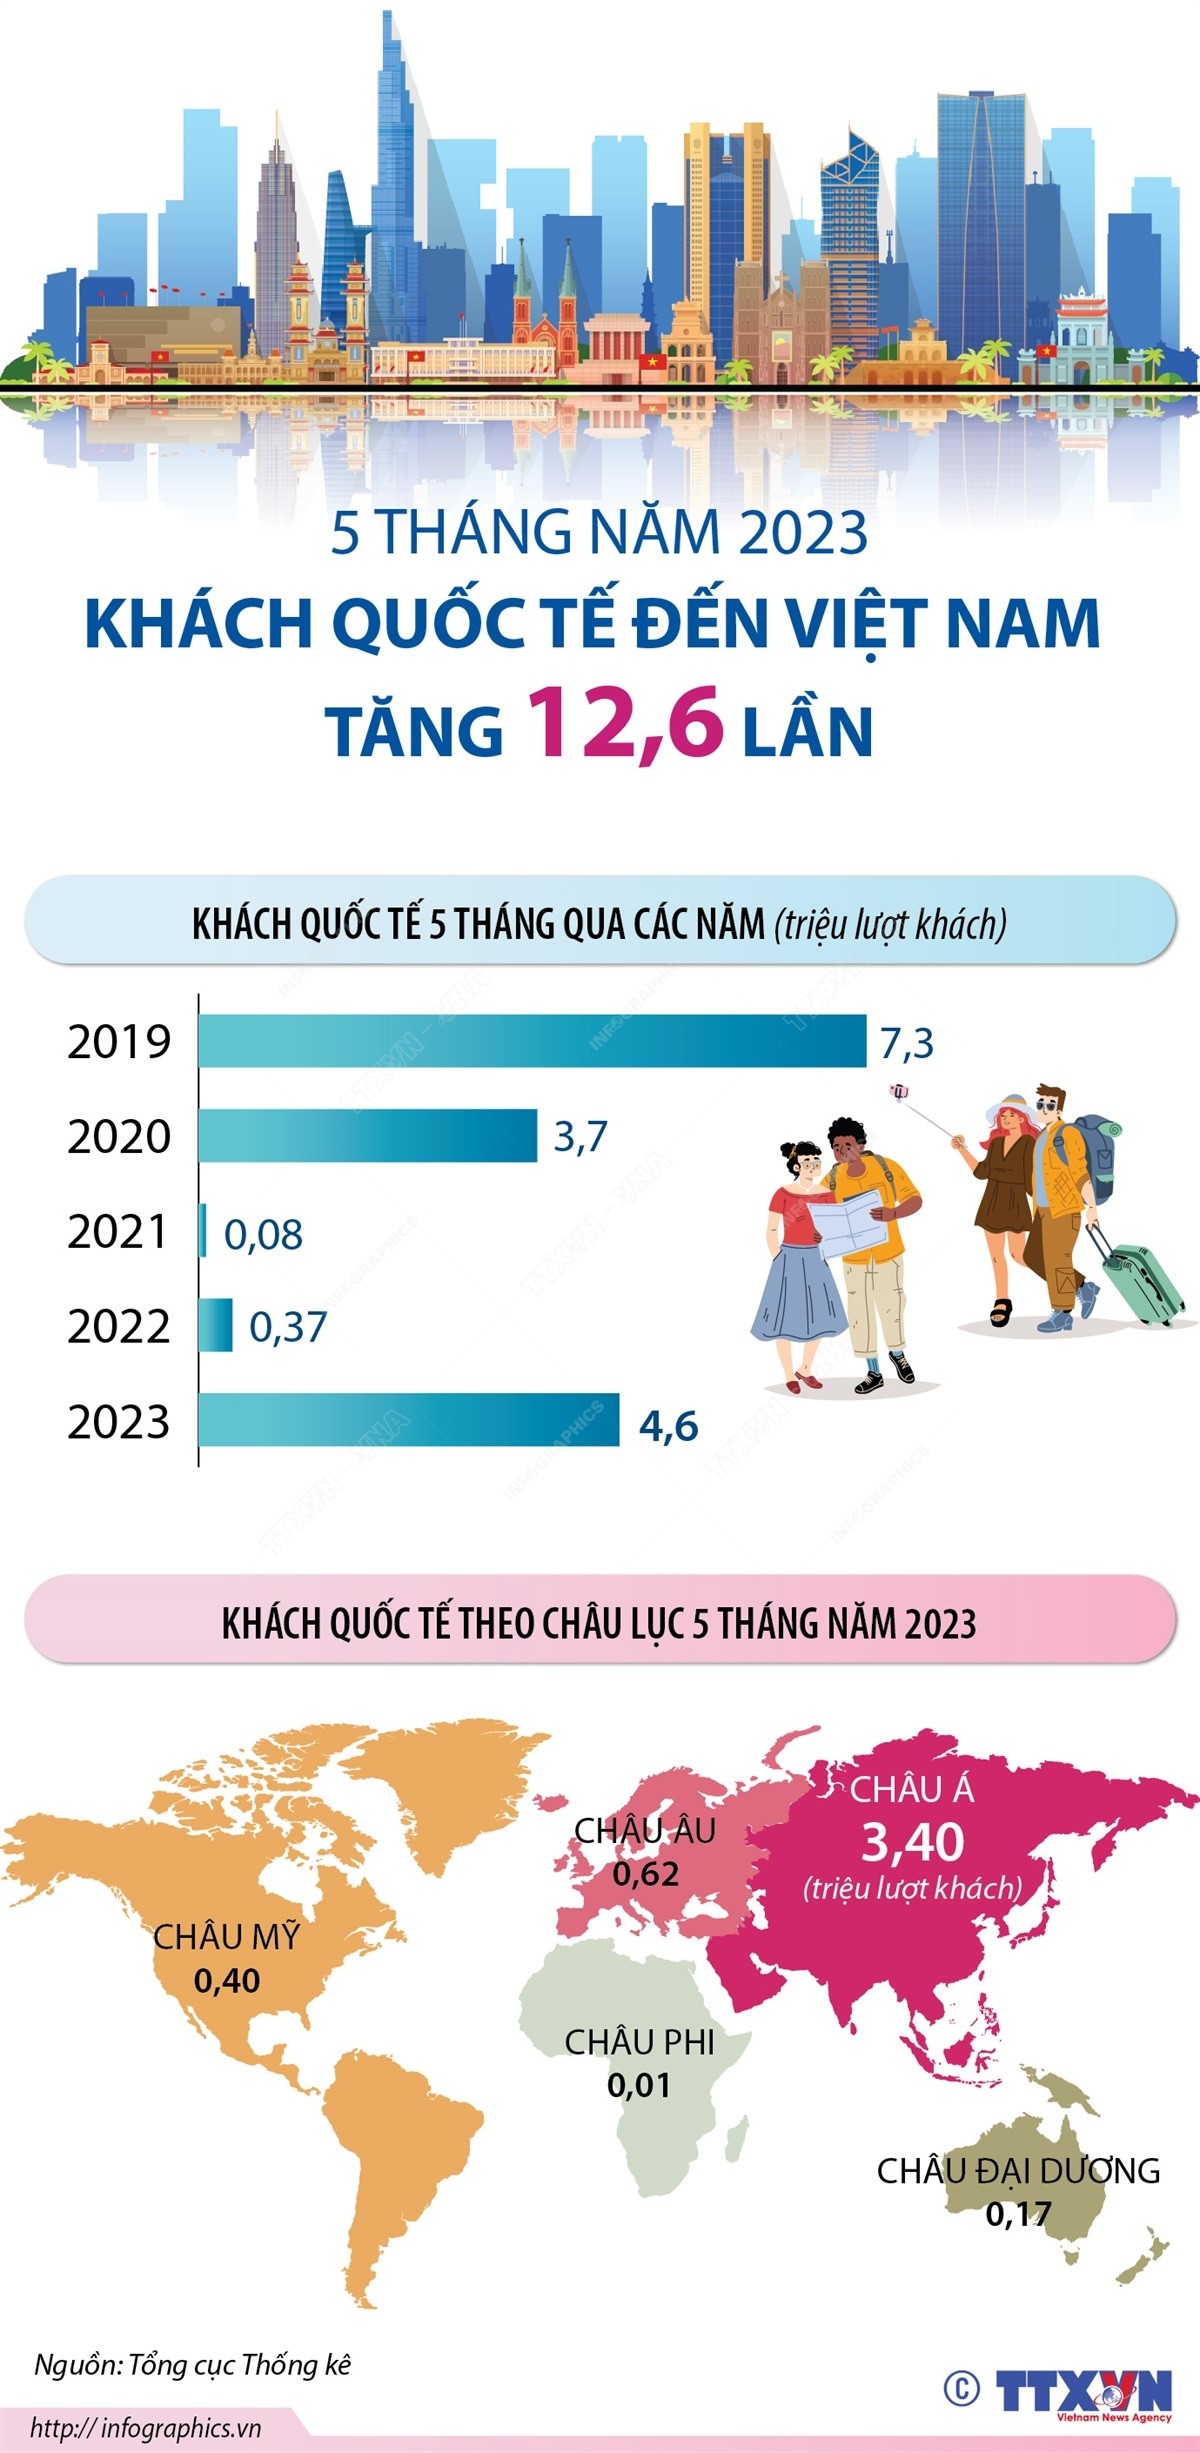 5 tháng năm 2023, khách quốc tế đến Việt Nam tăng 12,6 lần